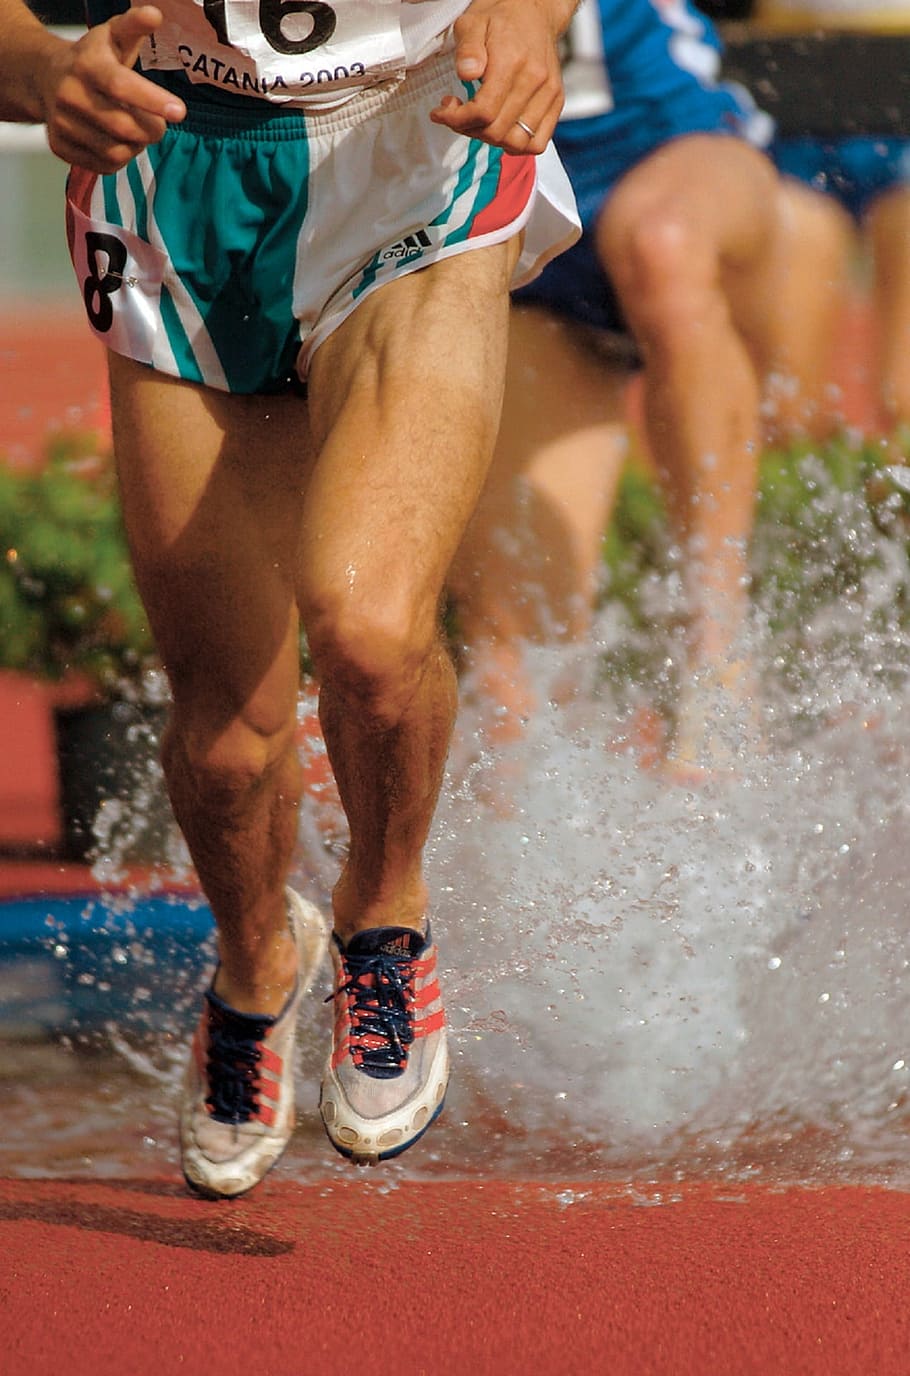 男性ジョギング, ランナーの足, 競争, レース, 足, 水, 靴, スポーツ, アスリート, フィットネス